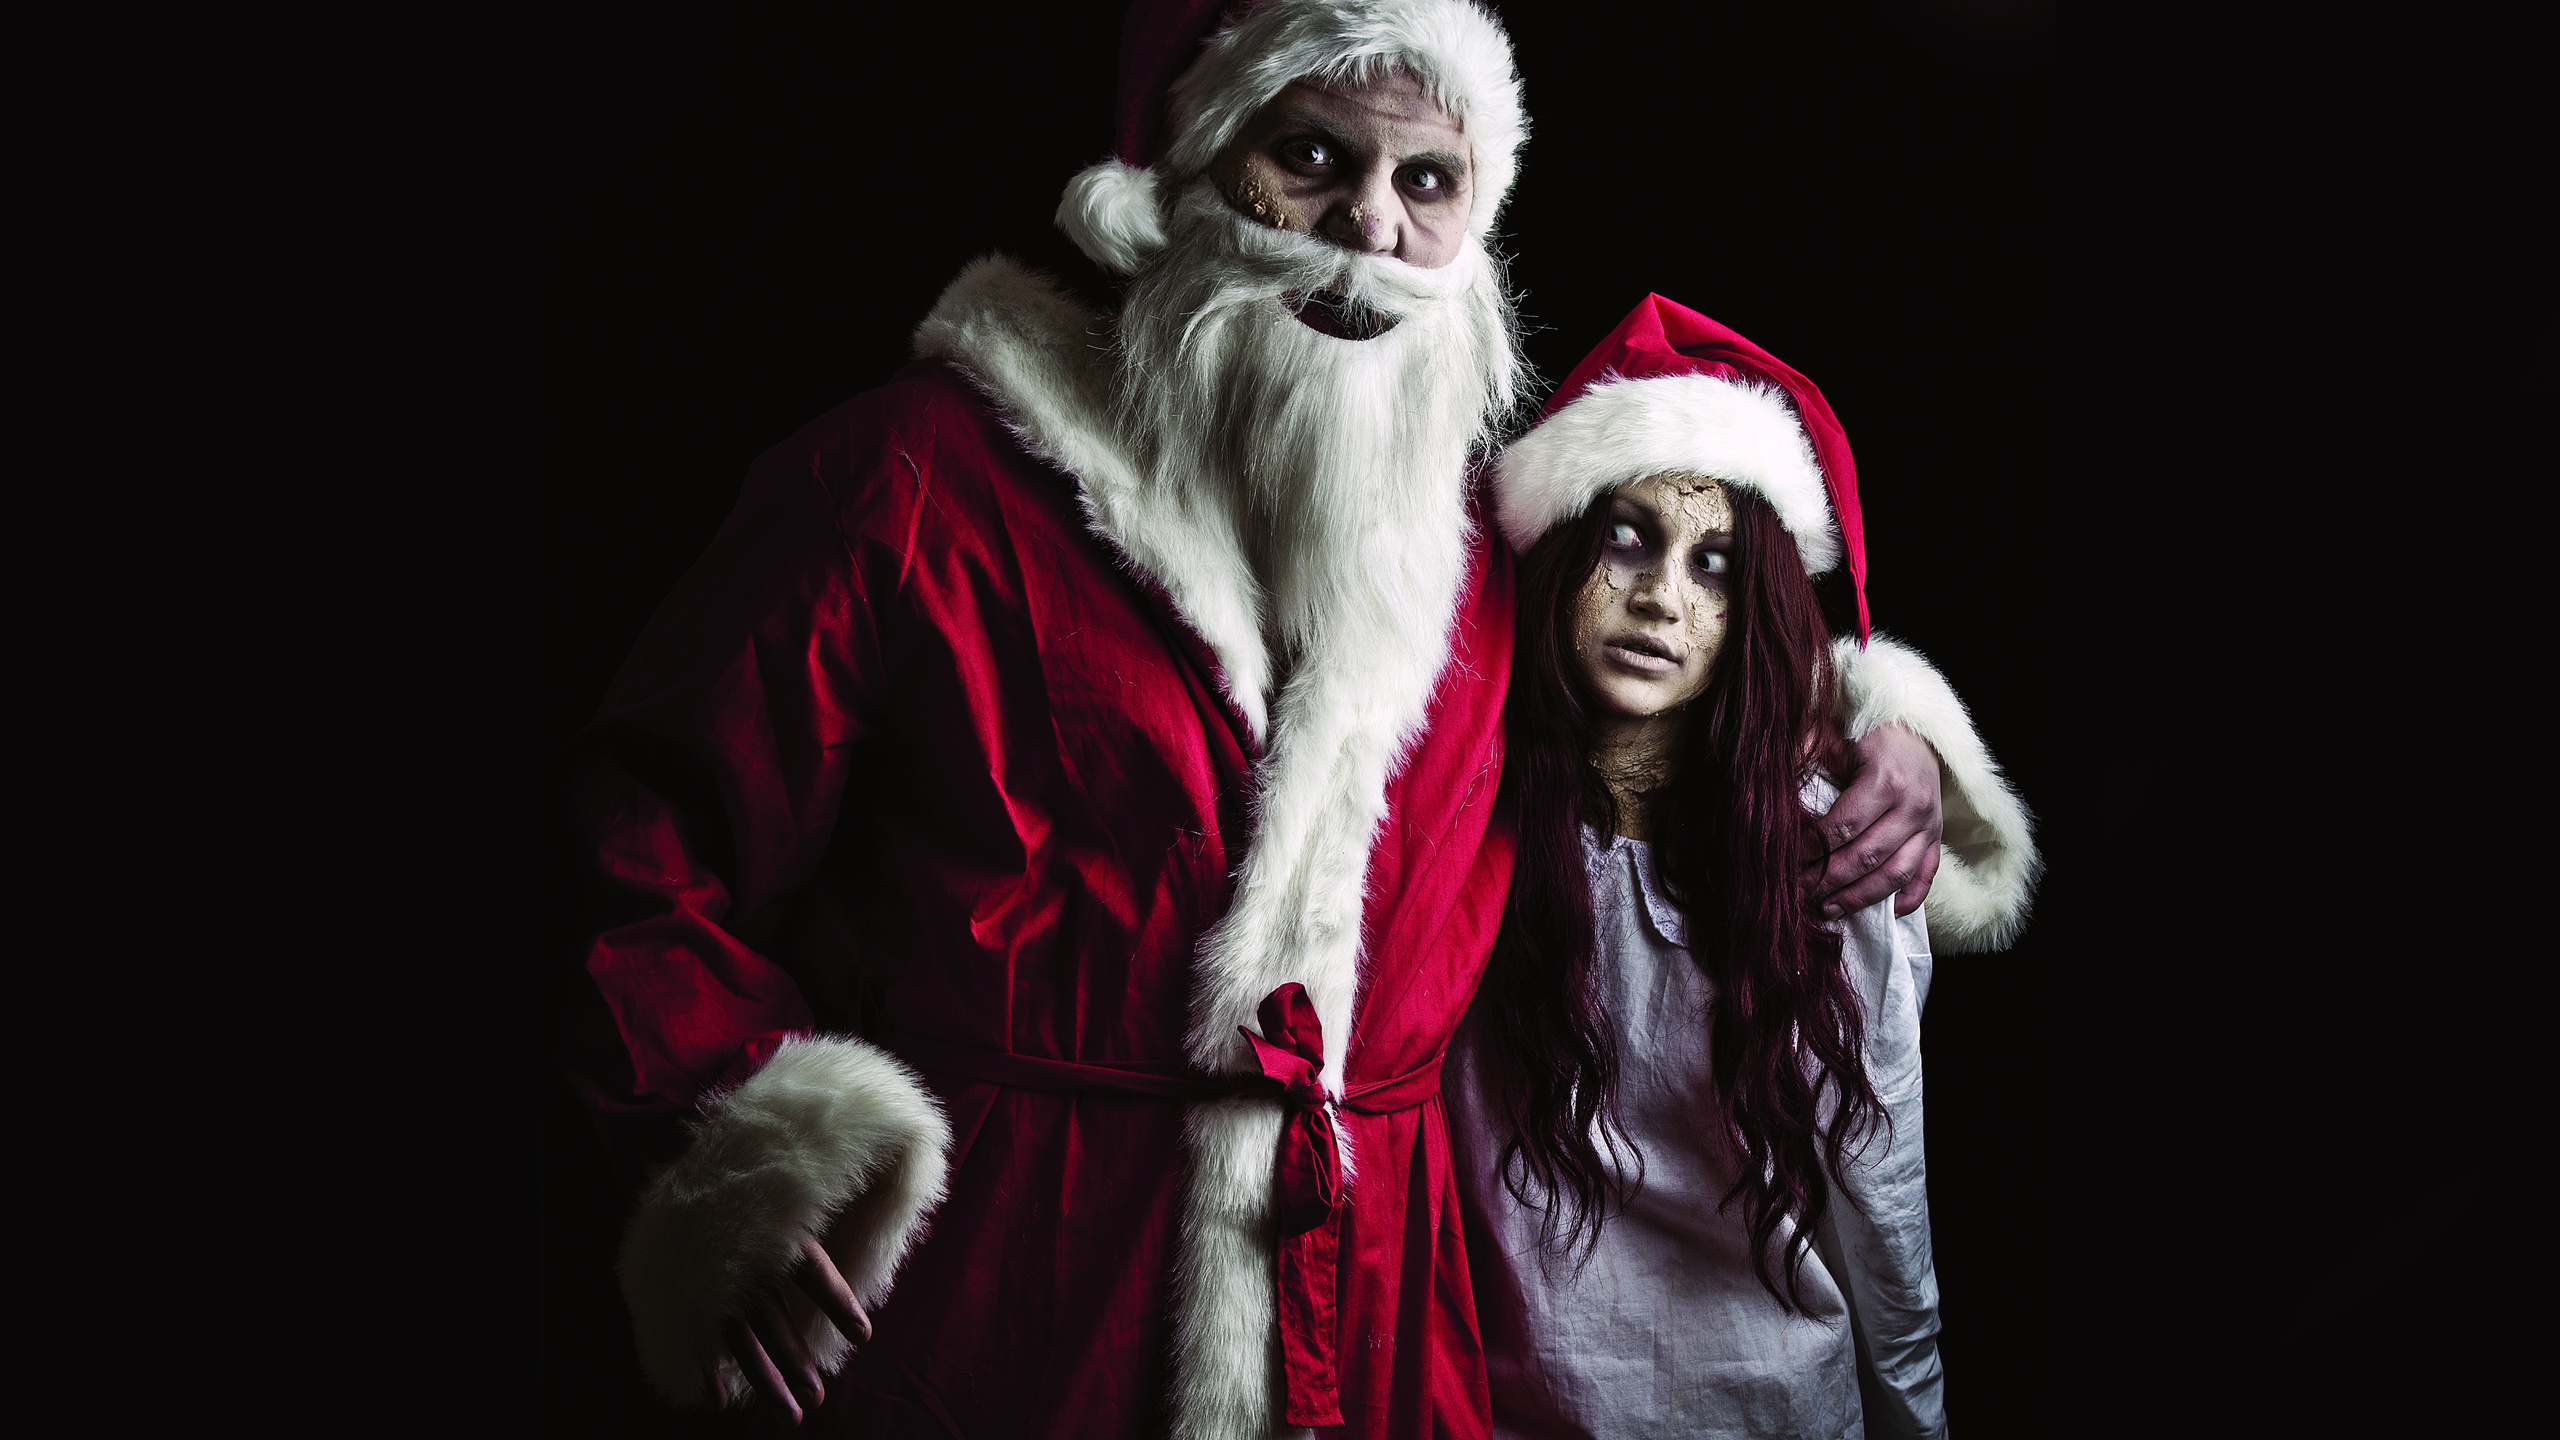 坎卜斯, 圣诞老人, 圣诞节那天, 邪恶的, 脸上的毛发 壁纸 2560x1440 允许